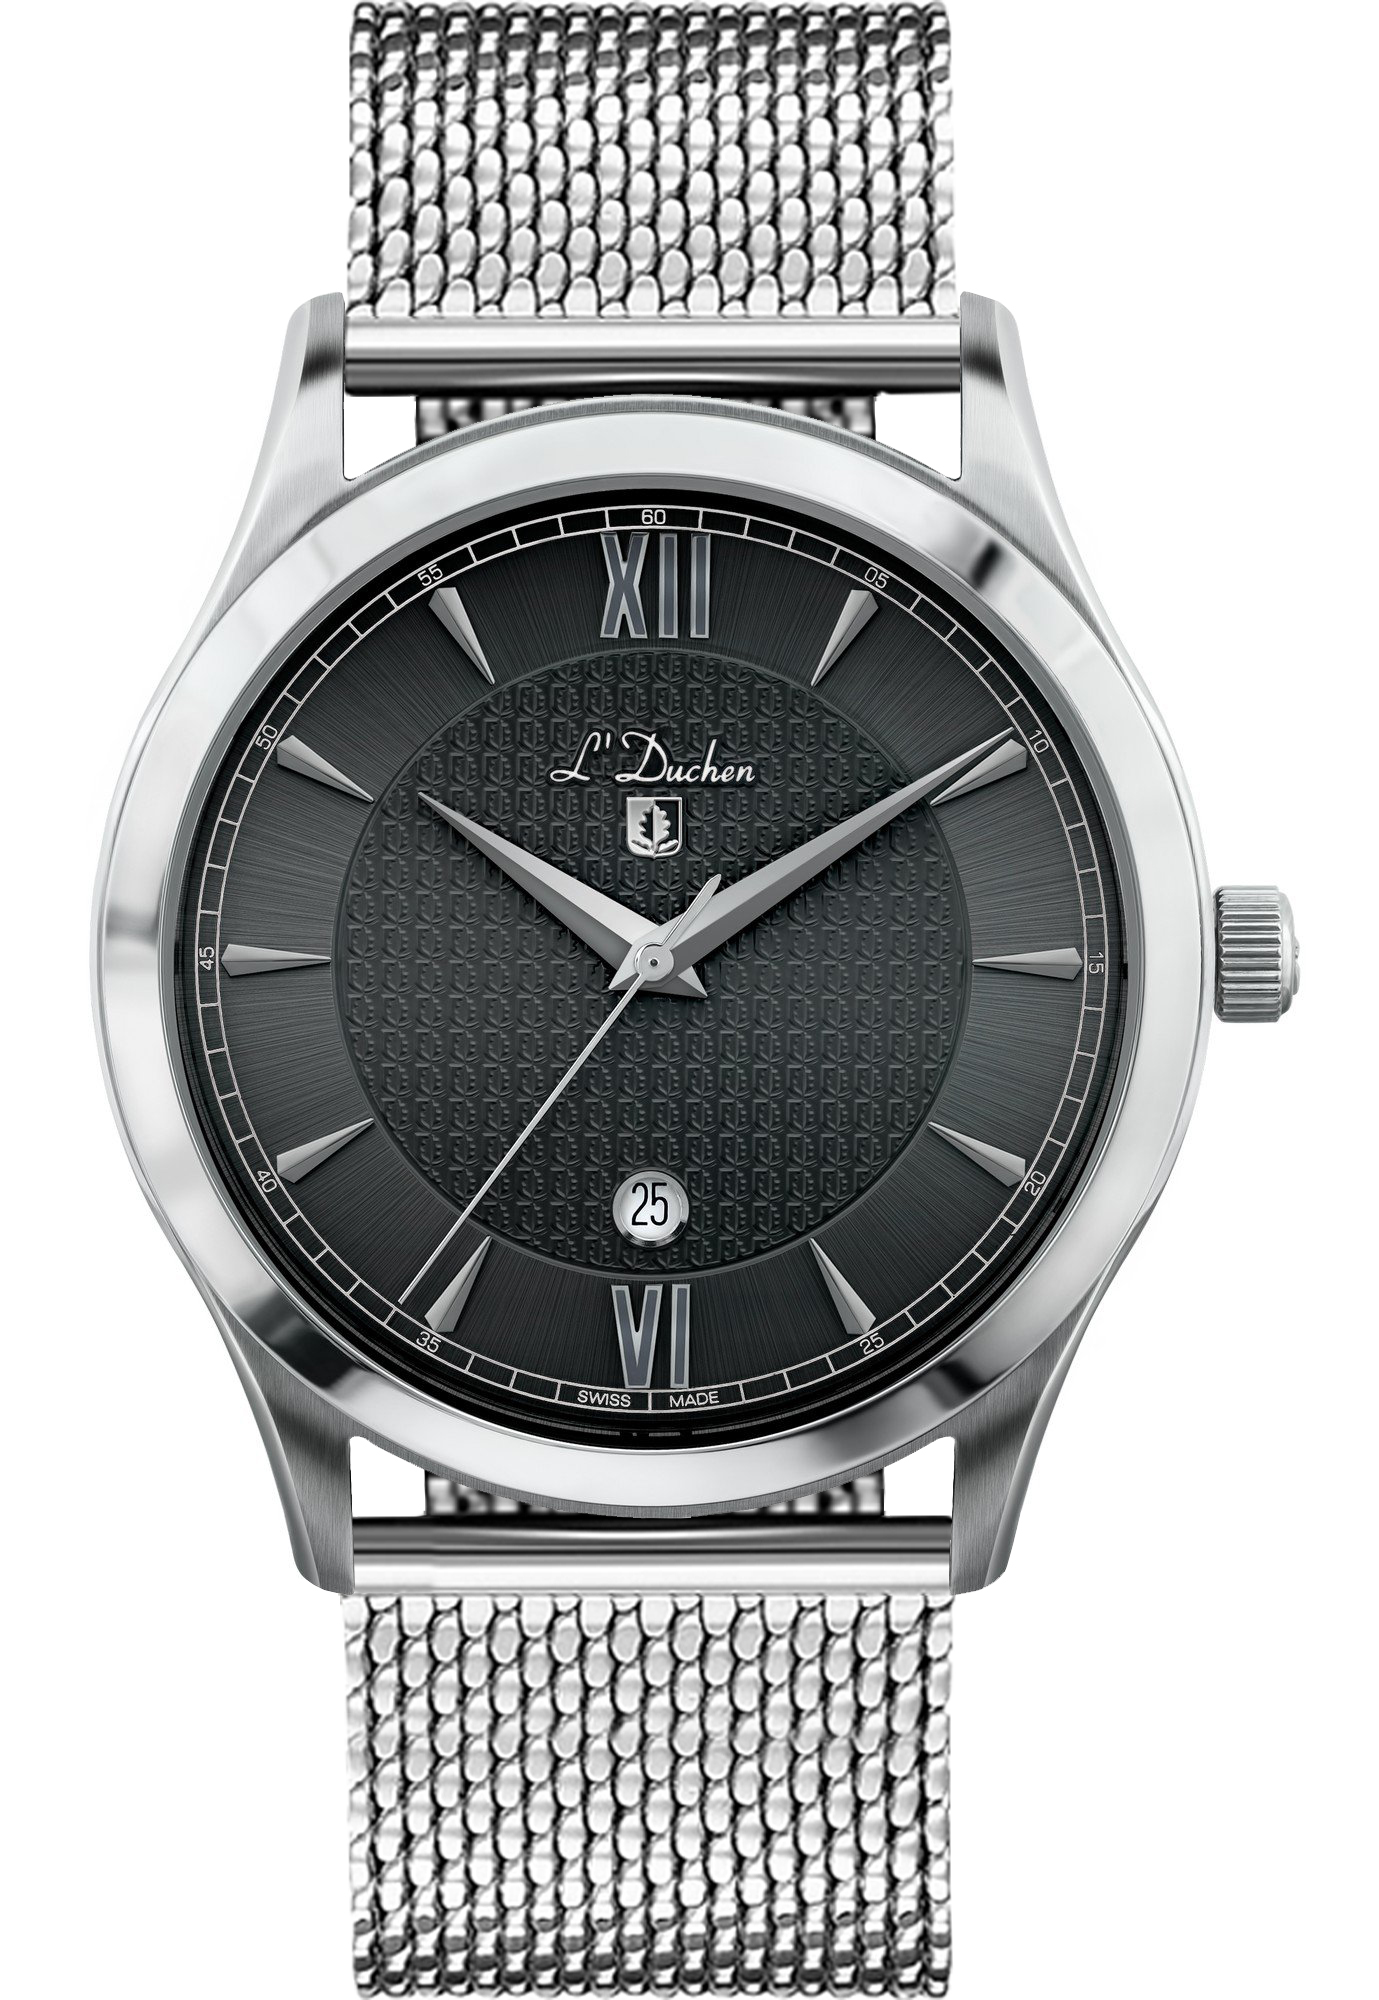 Наручные часы мужские L'Duchen D 761.11.11 M серебристые